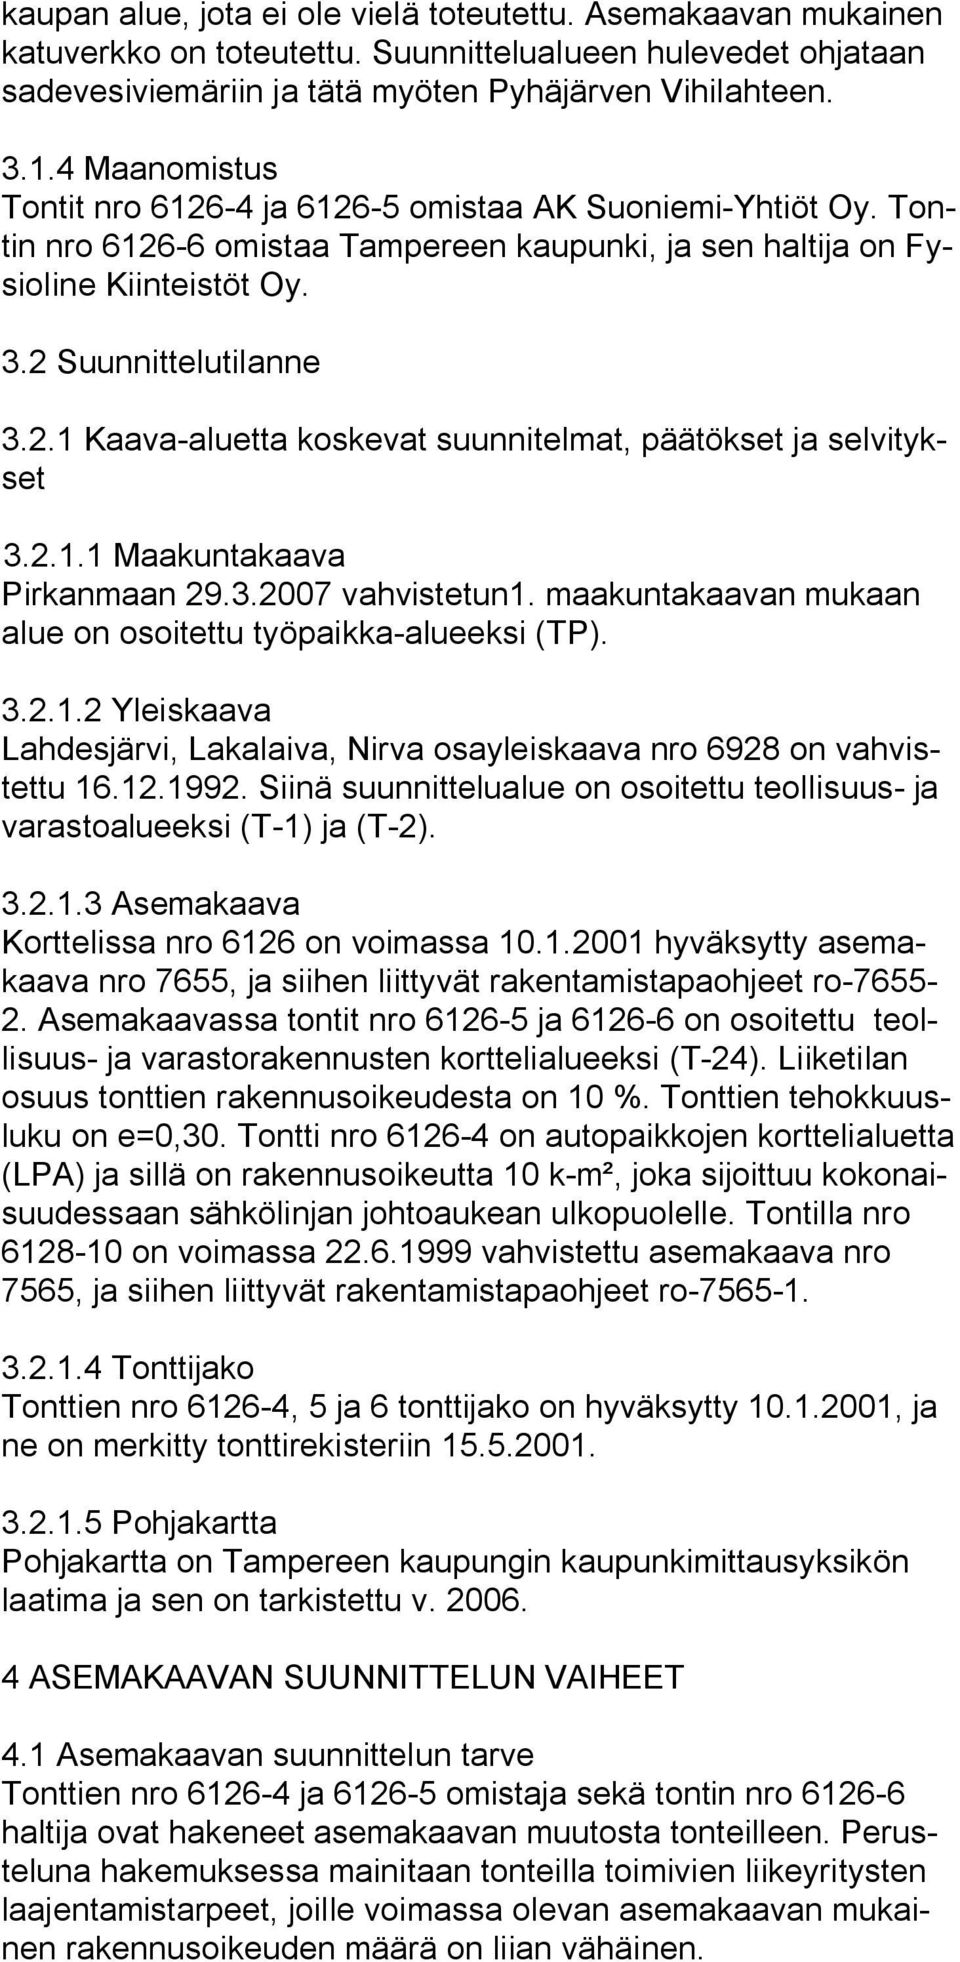 2.1.1 Maakuntakaava Pirkanmaan 29.3.2007 vahvistetun1. maakuntakaavan mukaan alue on osoitettu työpaikka alueeksi (TP). 3.2.1.2 Yleiskaava Lahdesjärvi, Lakalaiva, Nirva osayleiskaava nro 6928 on vahvistettu 16.